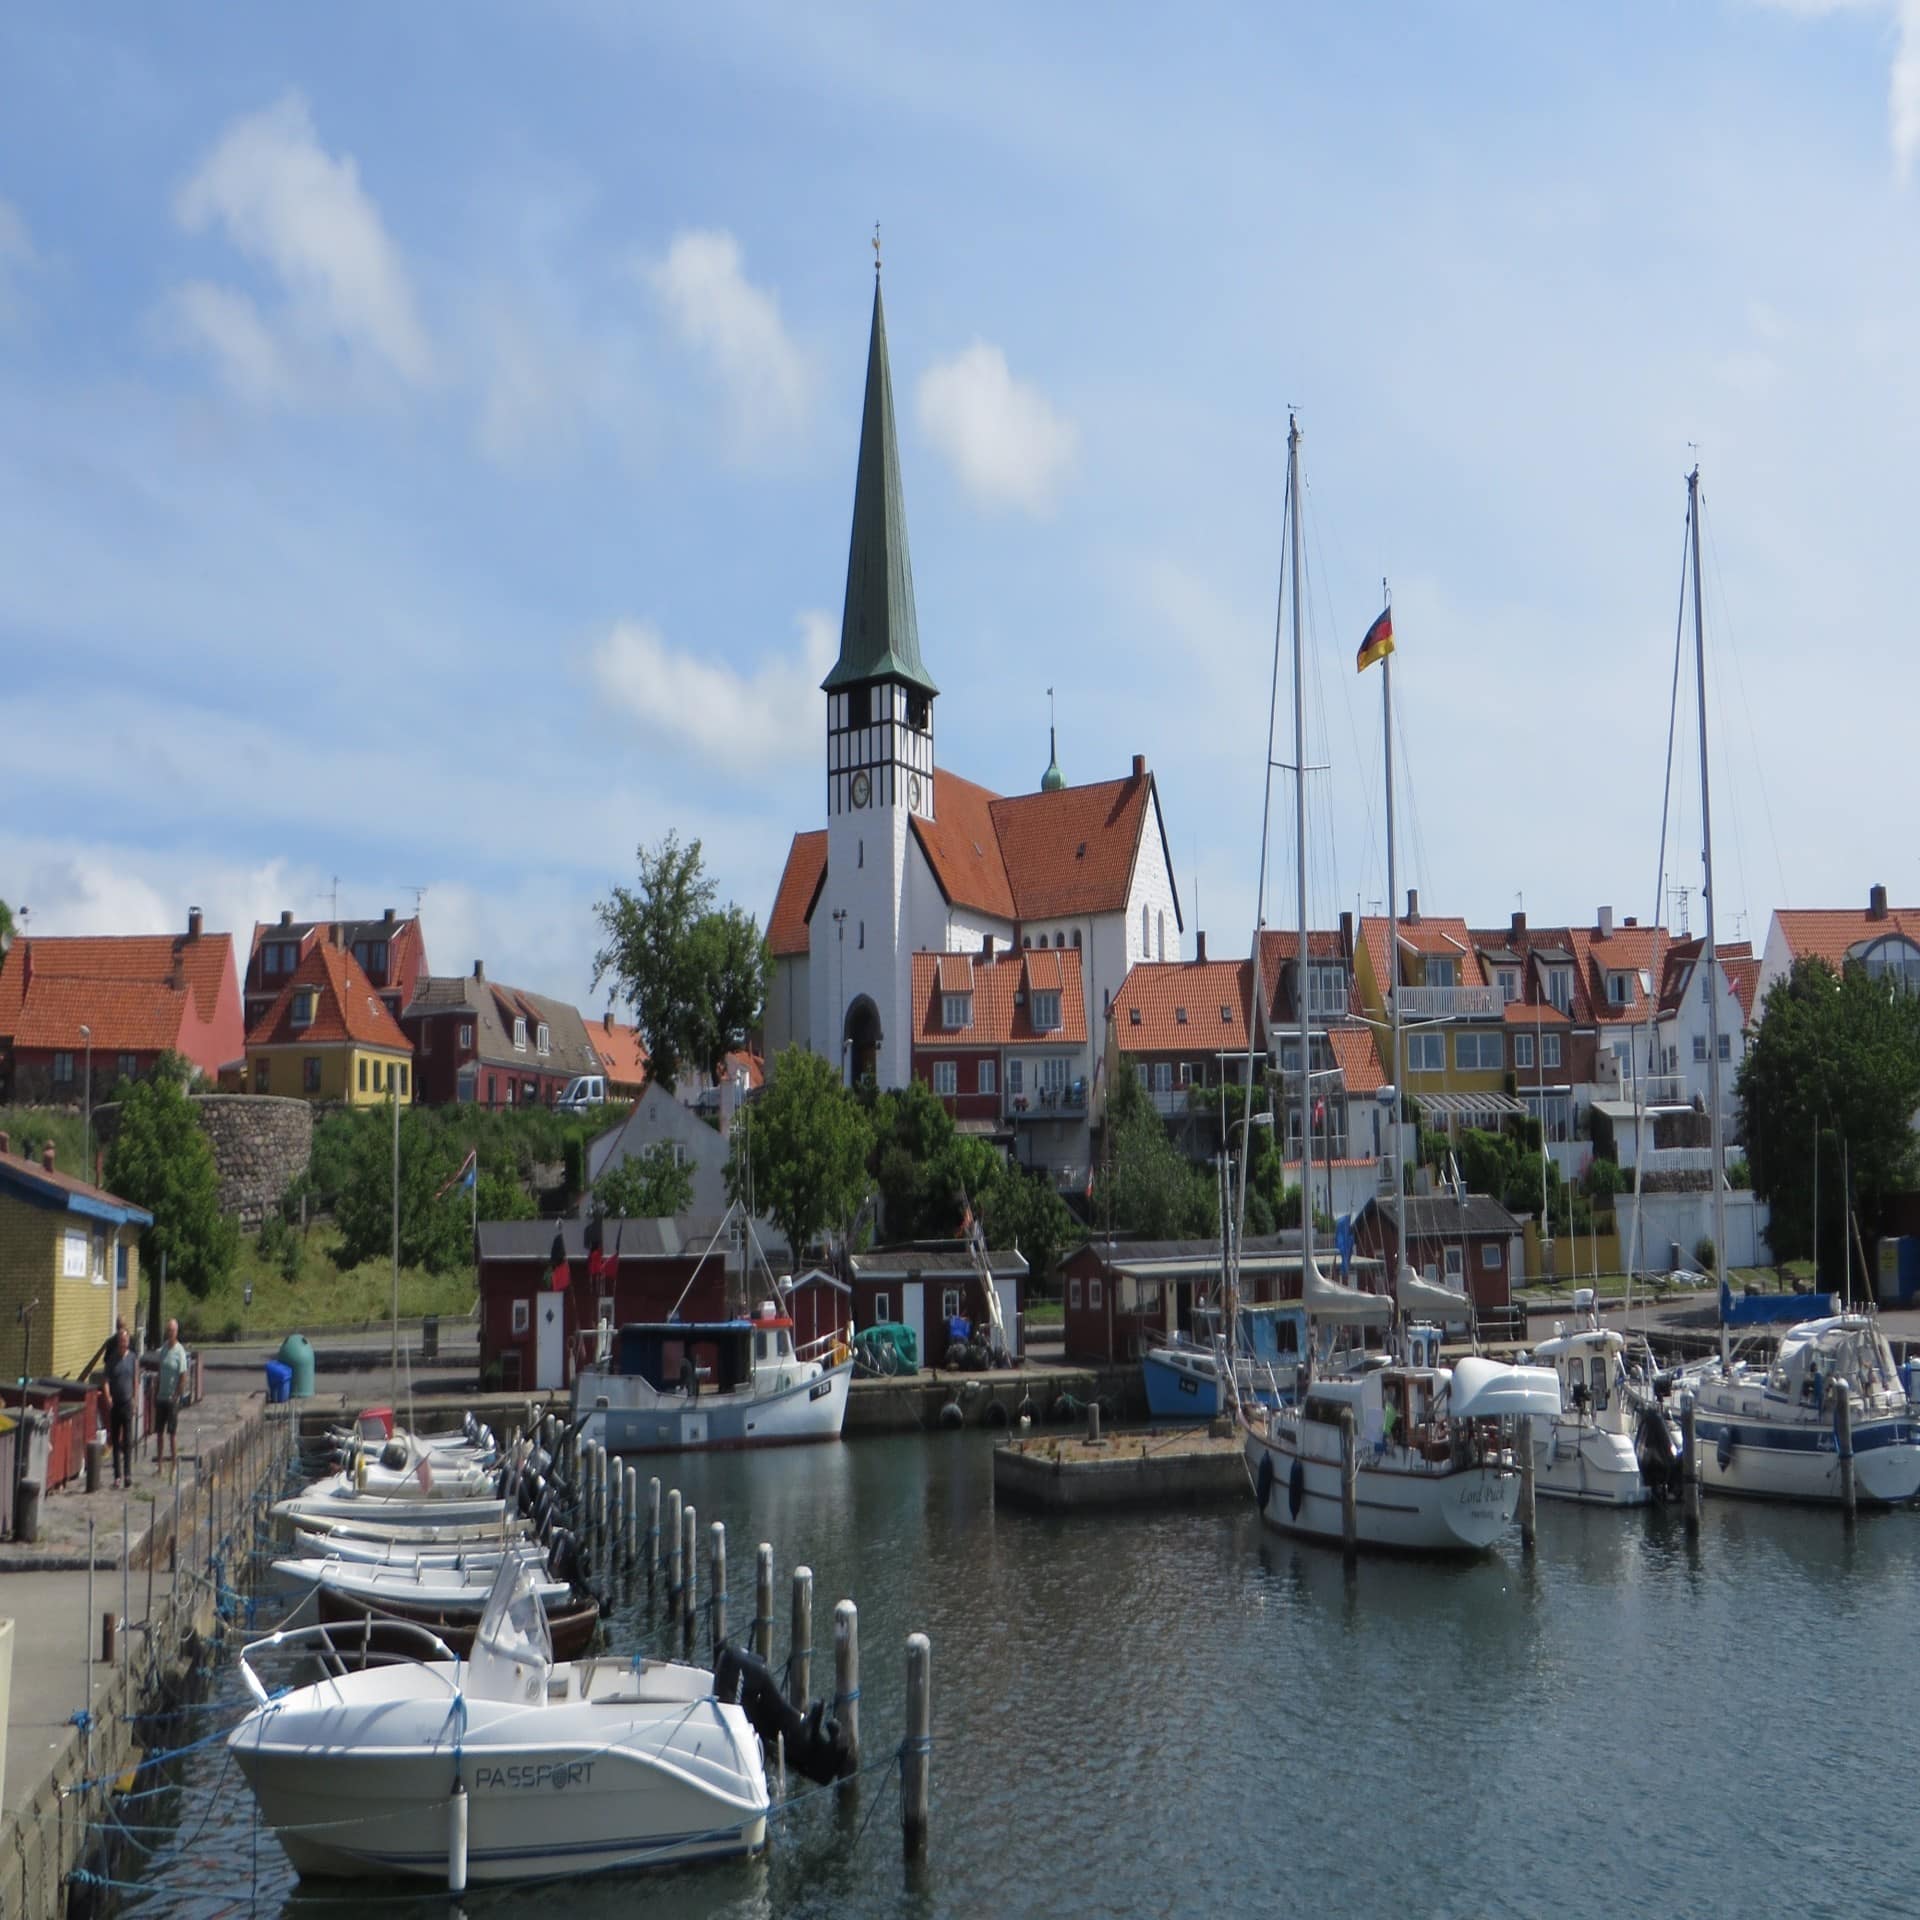 Blick über den Hafen von Rønne mit kleinen Booten, dahinter Häuser und eine Kirche.